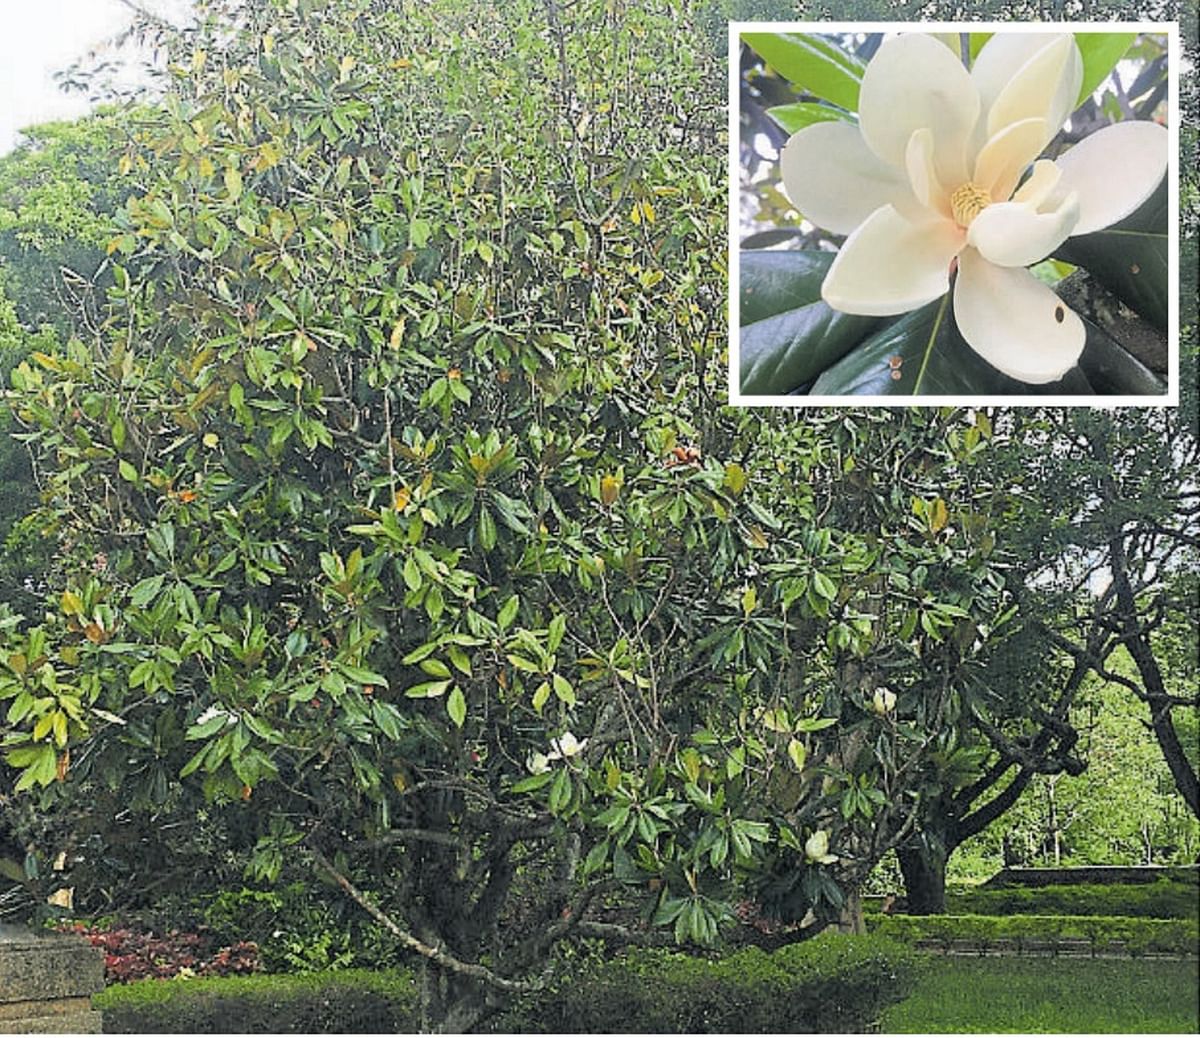 Exotic Magnolia grandiflora in full bloom on IISc campus